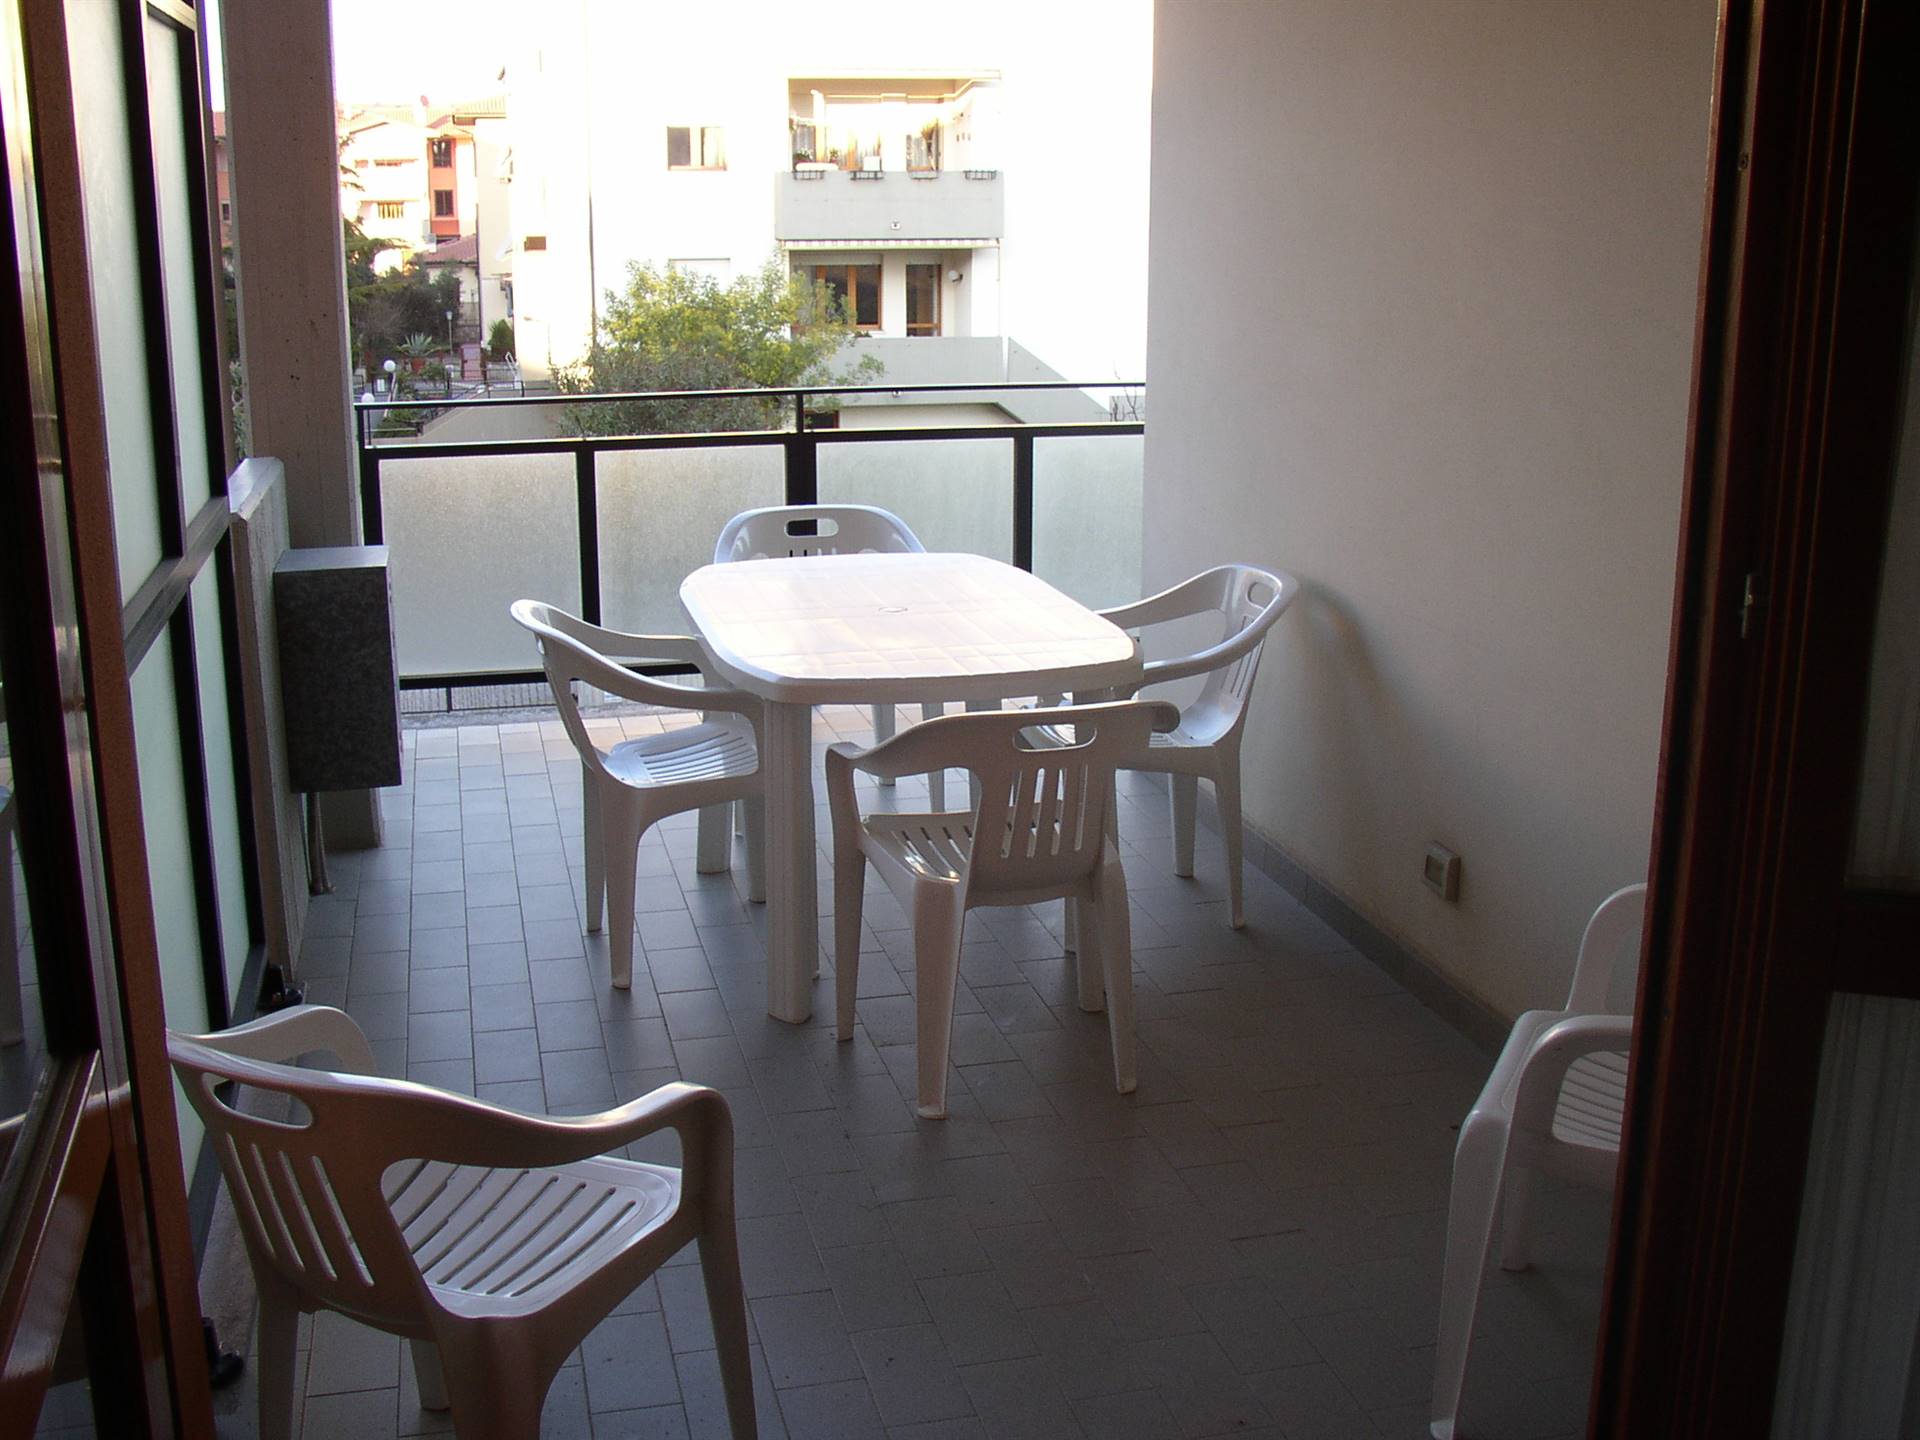 Appartamento in affitto a Follonica, 4 locali, zona Località: CASSARELLO, prezzo € 500 | CambioCasa.it